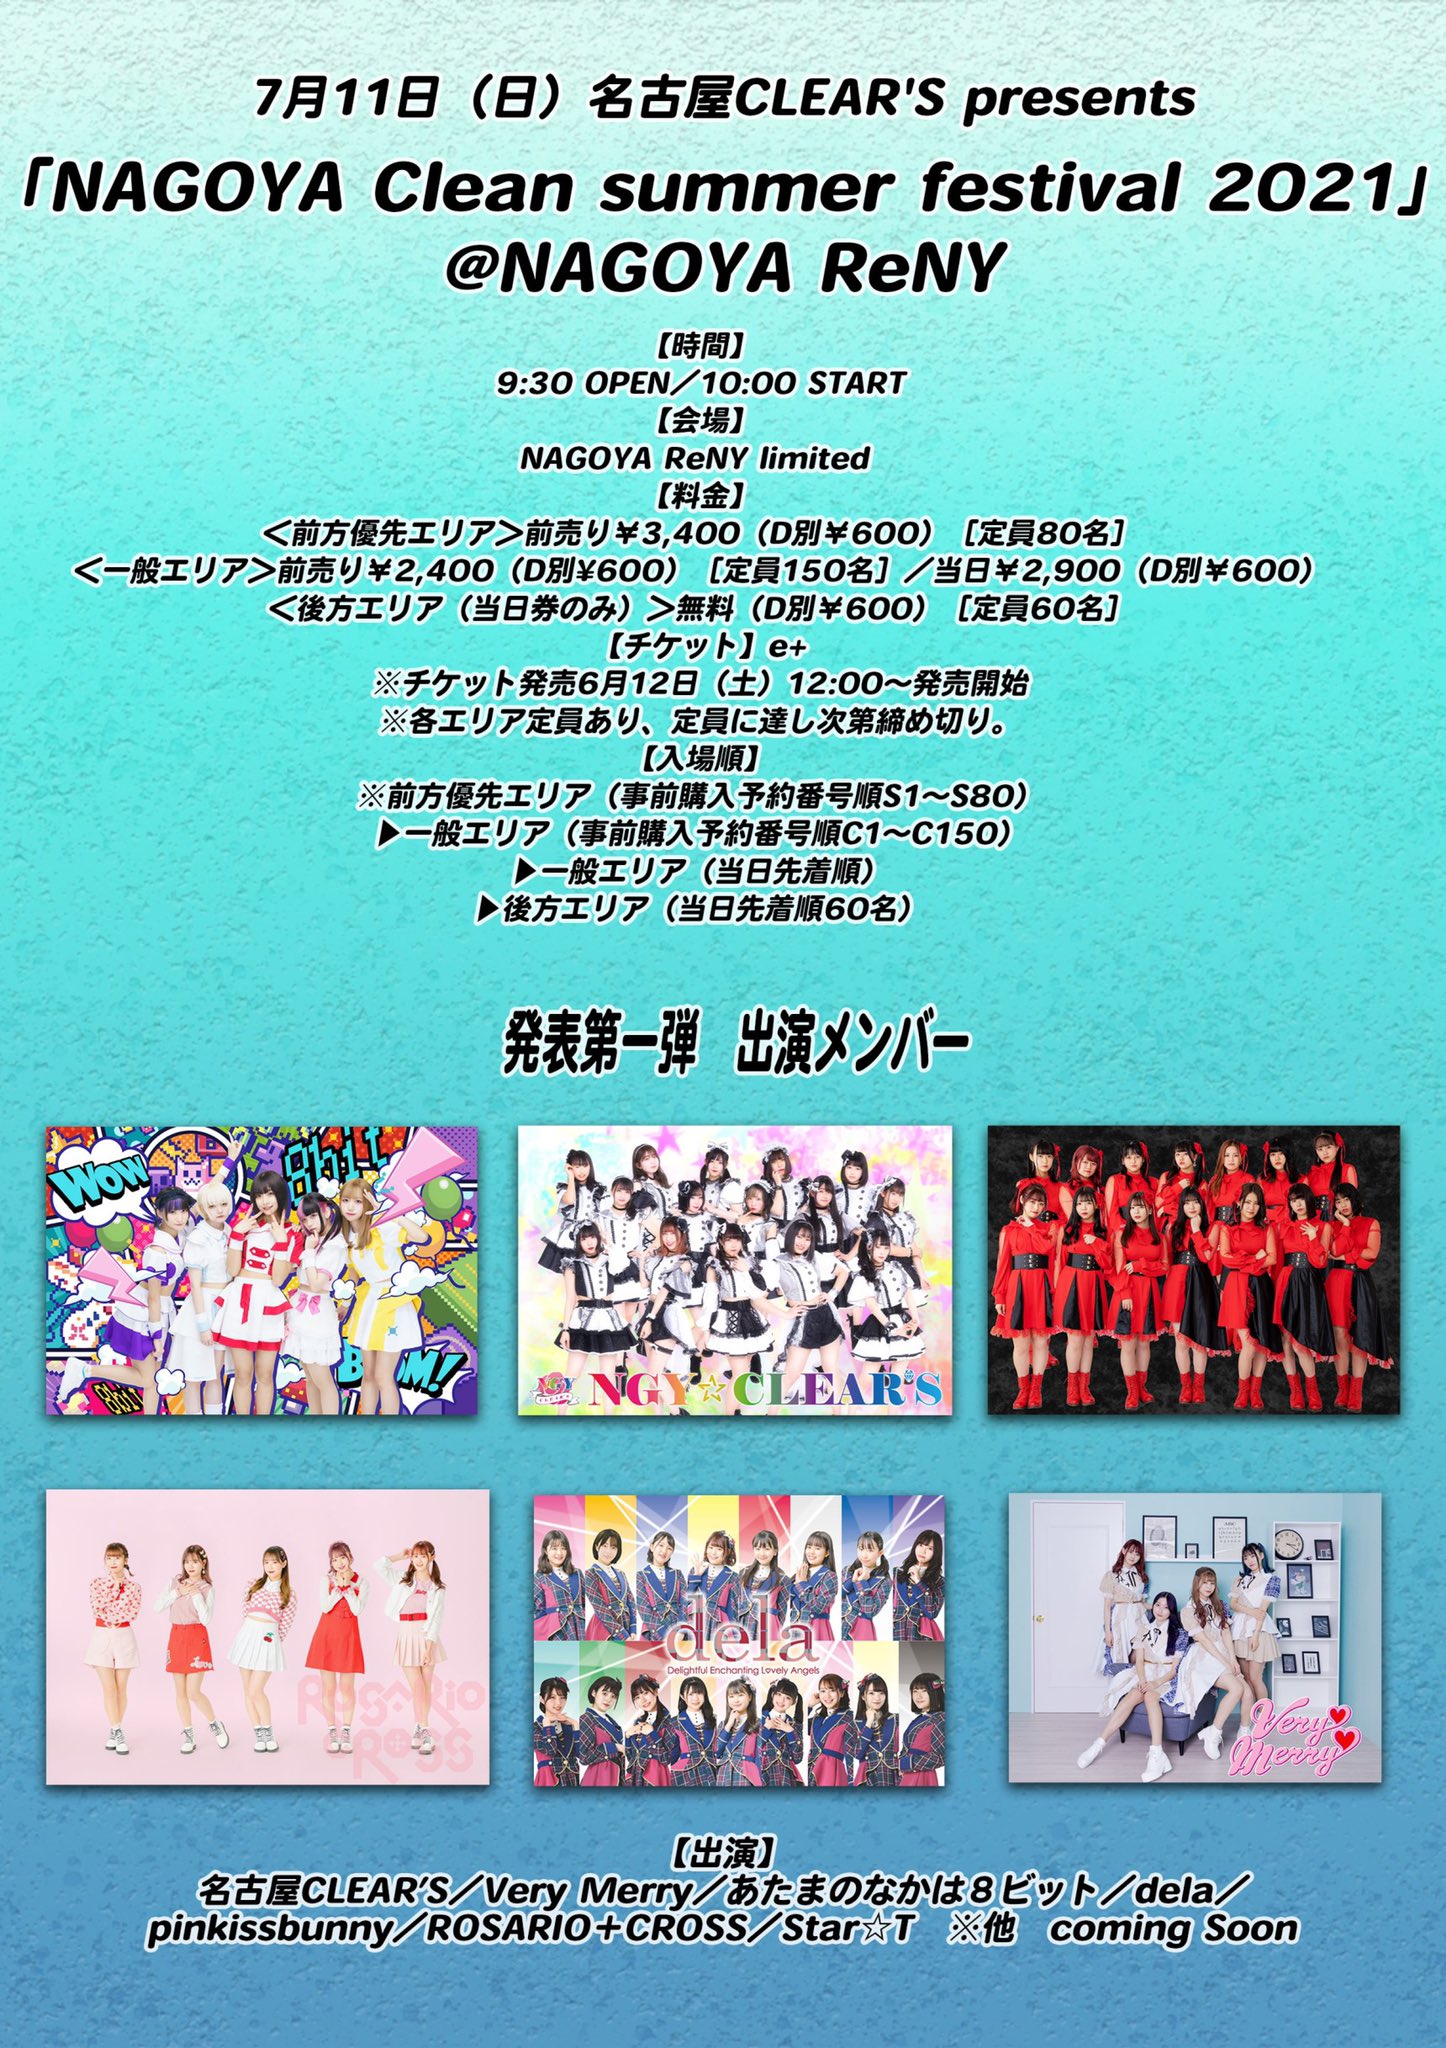 名古屋 CLEAR'S presents「NAGOYA Clean summer festival 2021」